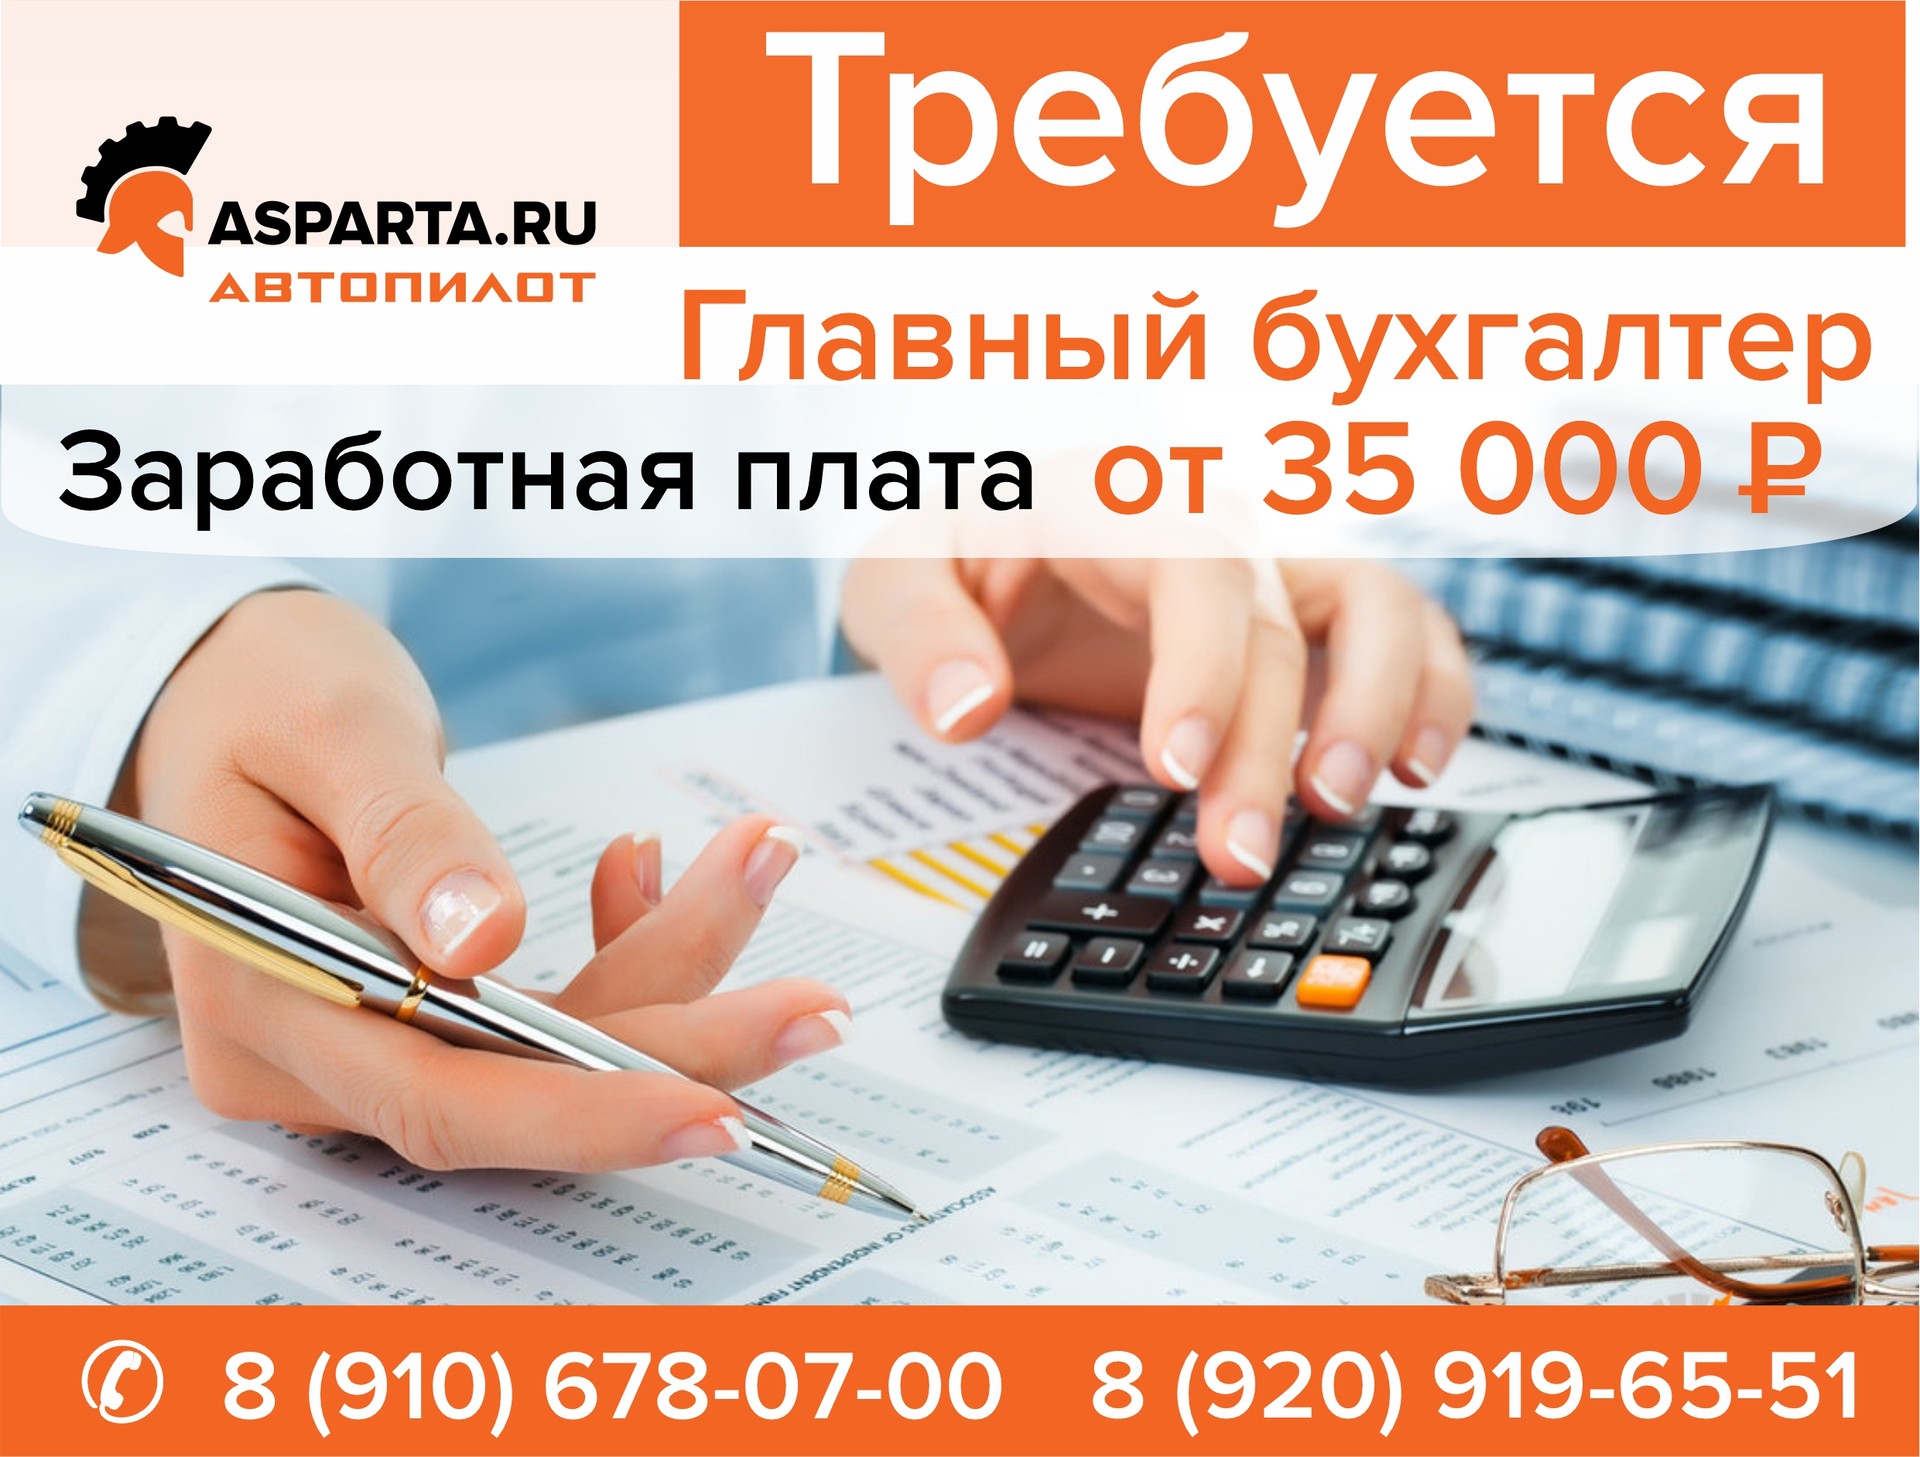 ASPARTA.RU (АВТОПИЛОТ) требуется главный бухгалтер. Заработная плата от 35000 рублей. 
Телефон: 8(910)678-07-00 и 8(920)919-65-51.